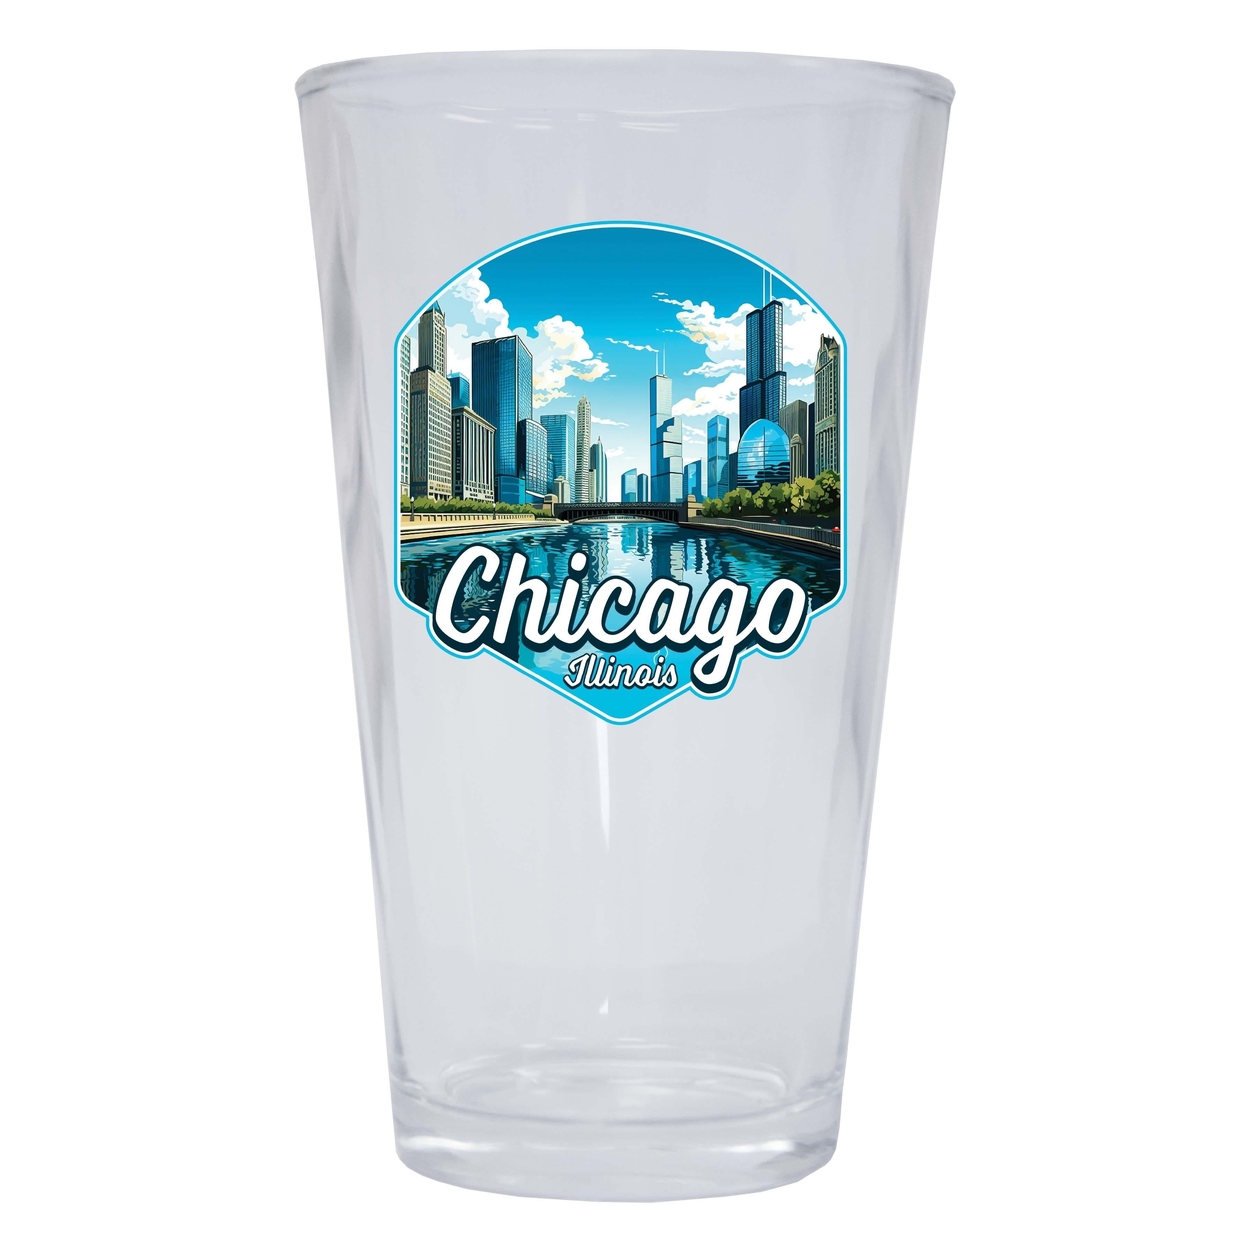 Chicago Illinois A Souvenir 16 Oz Pint Glass - 2-Pack